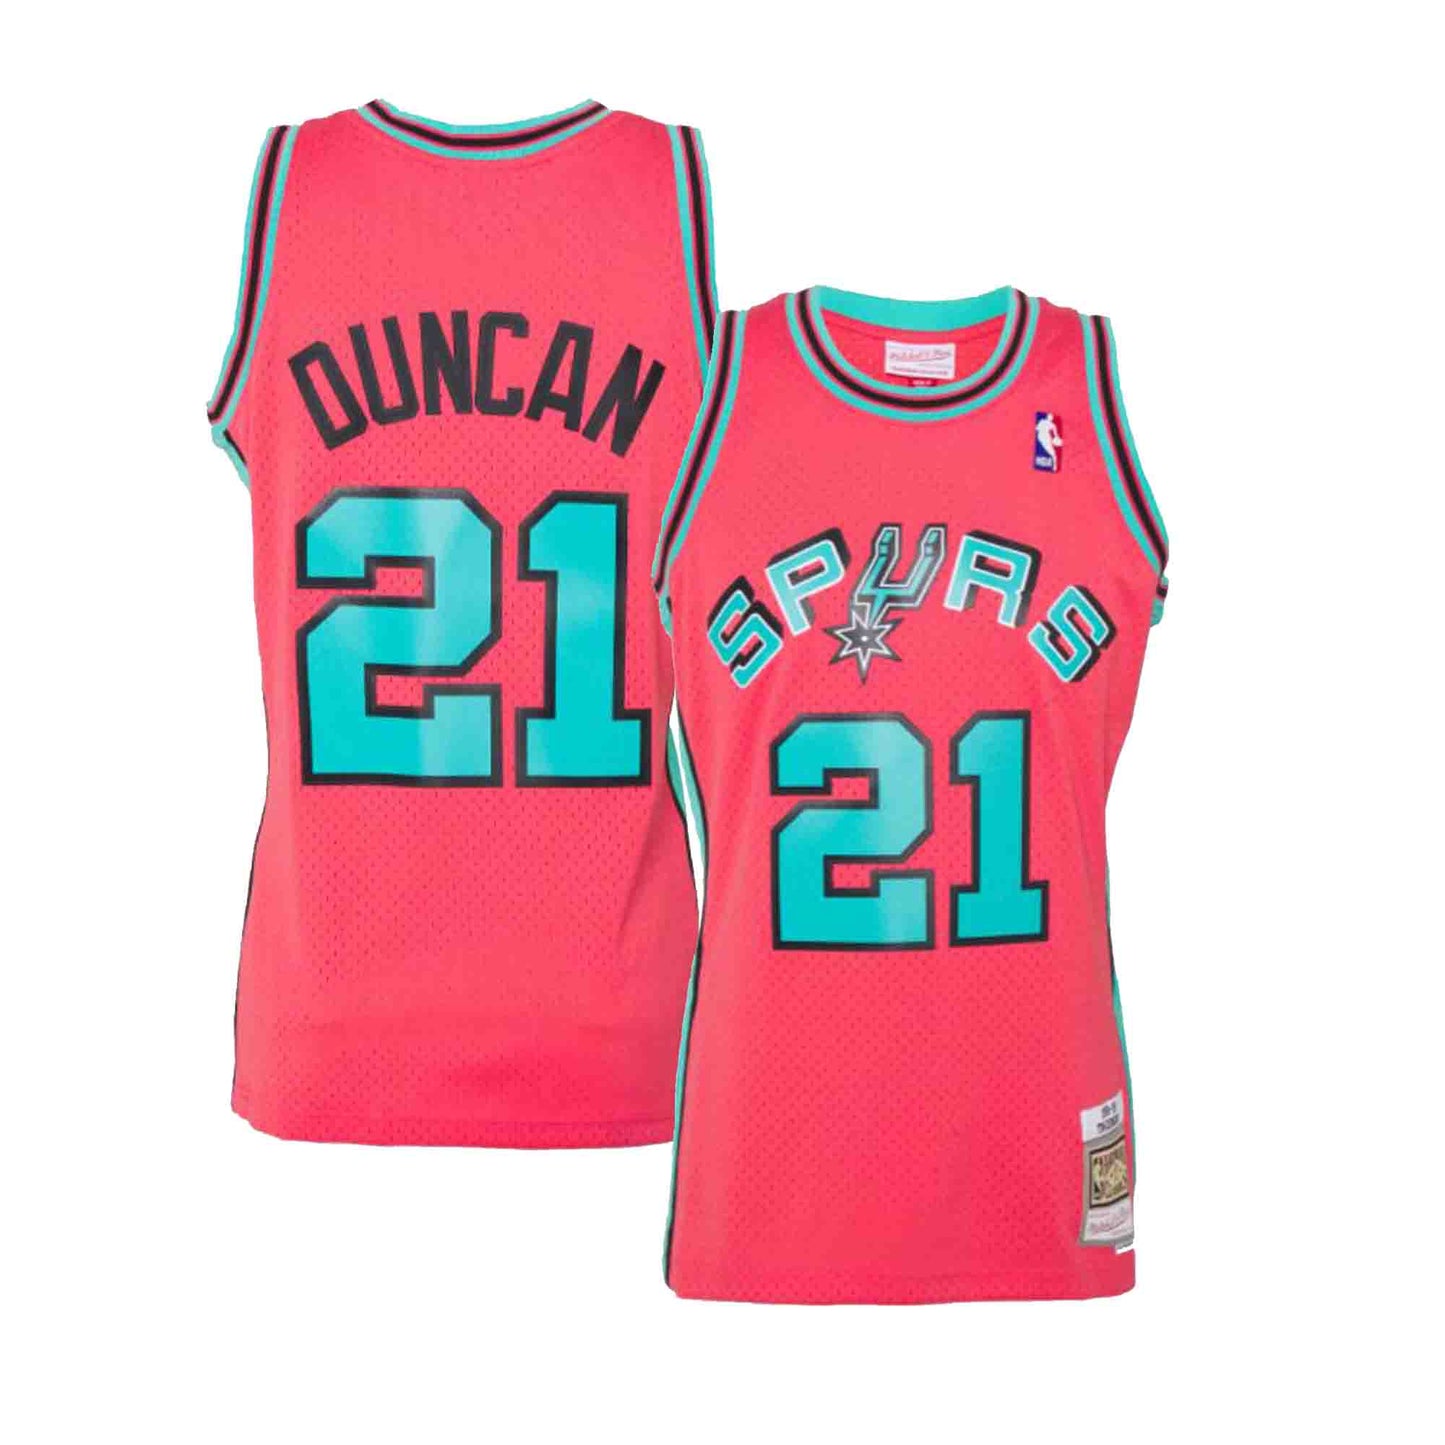 Tim Duncan Jerseys, Tim Duncan Shirt, Tim Duncan Gear & Merchandise